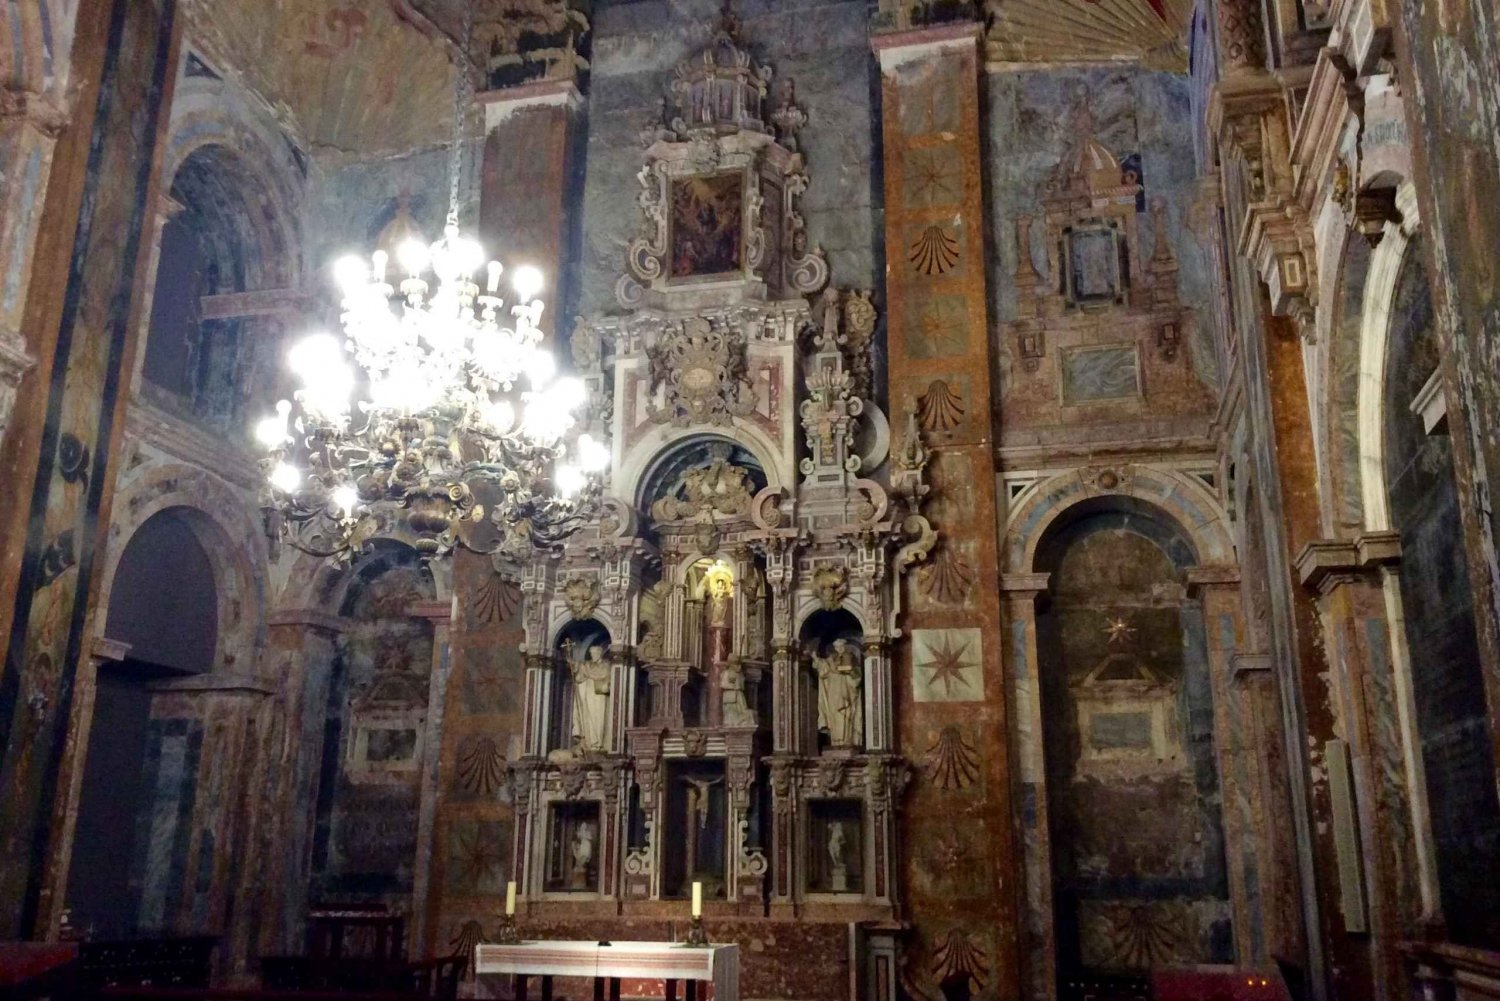 Santiago-katedralen + indgang Portico de la Gloria